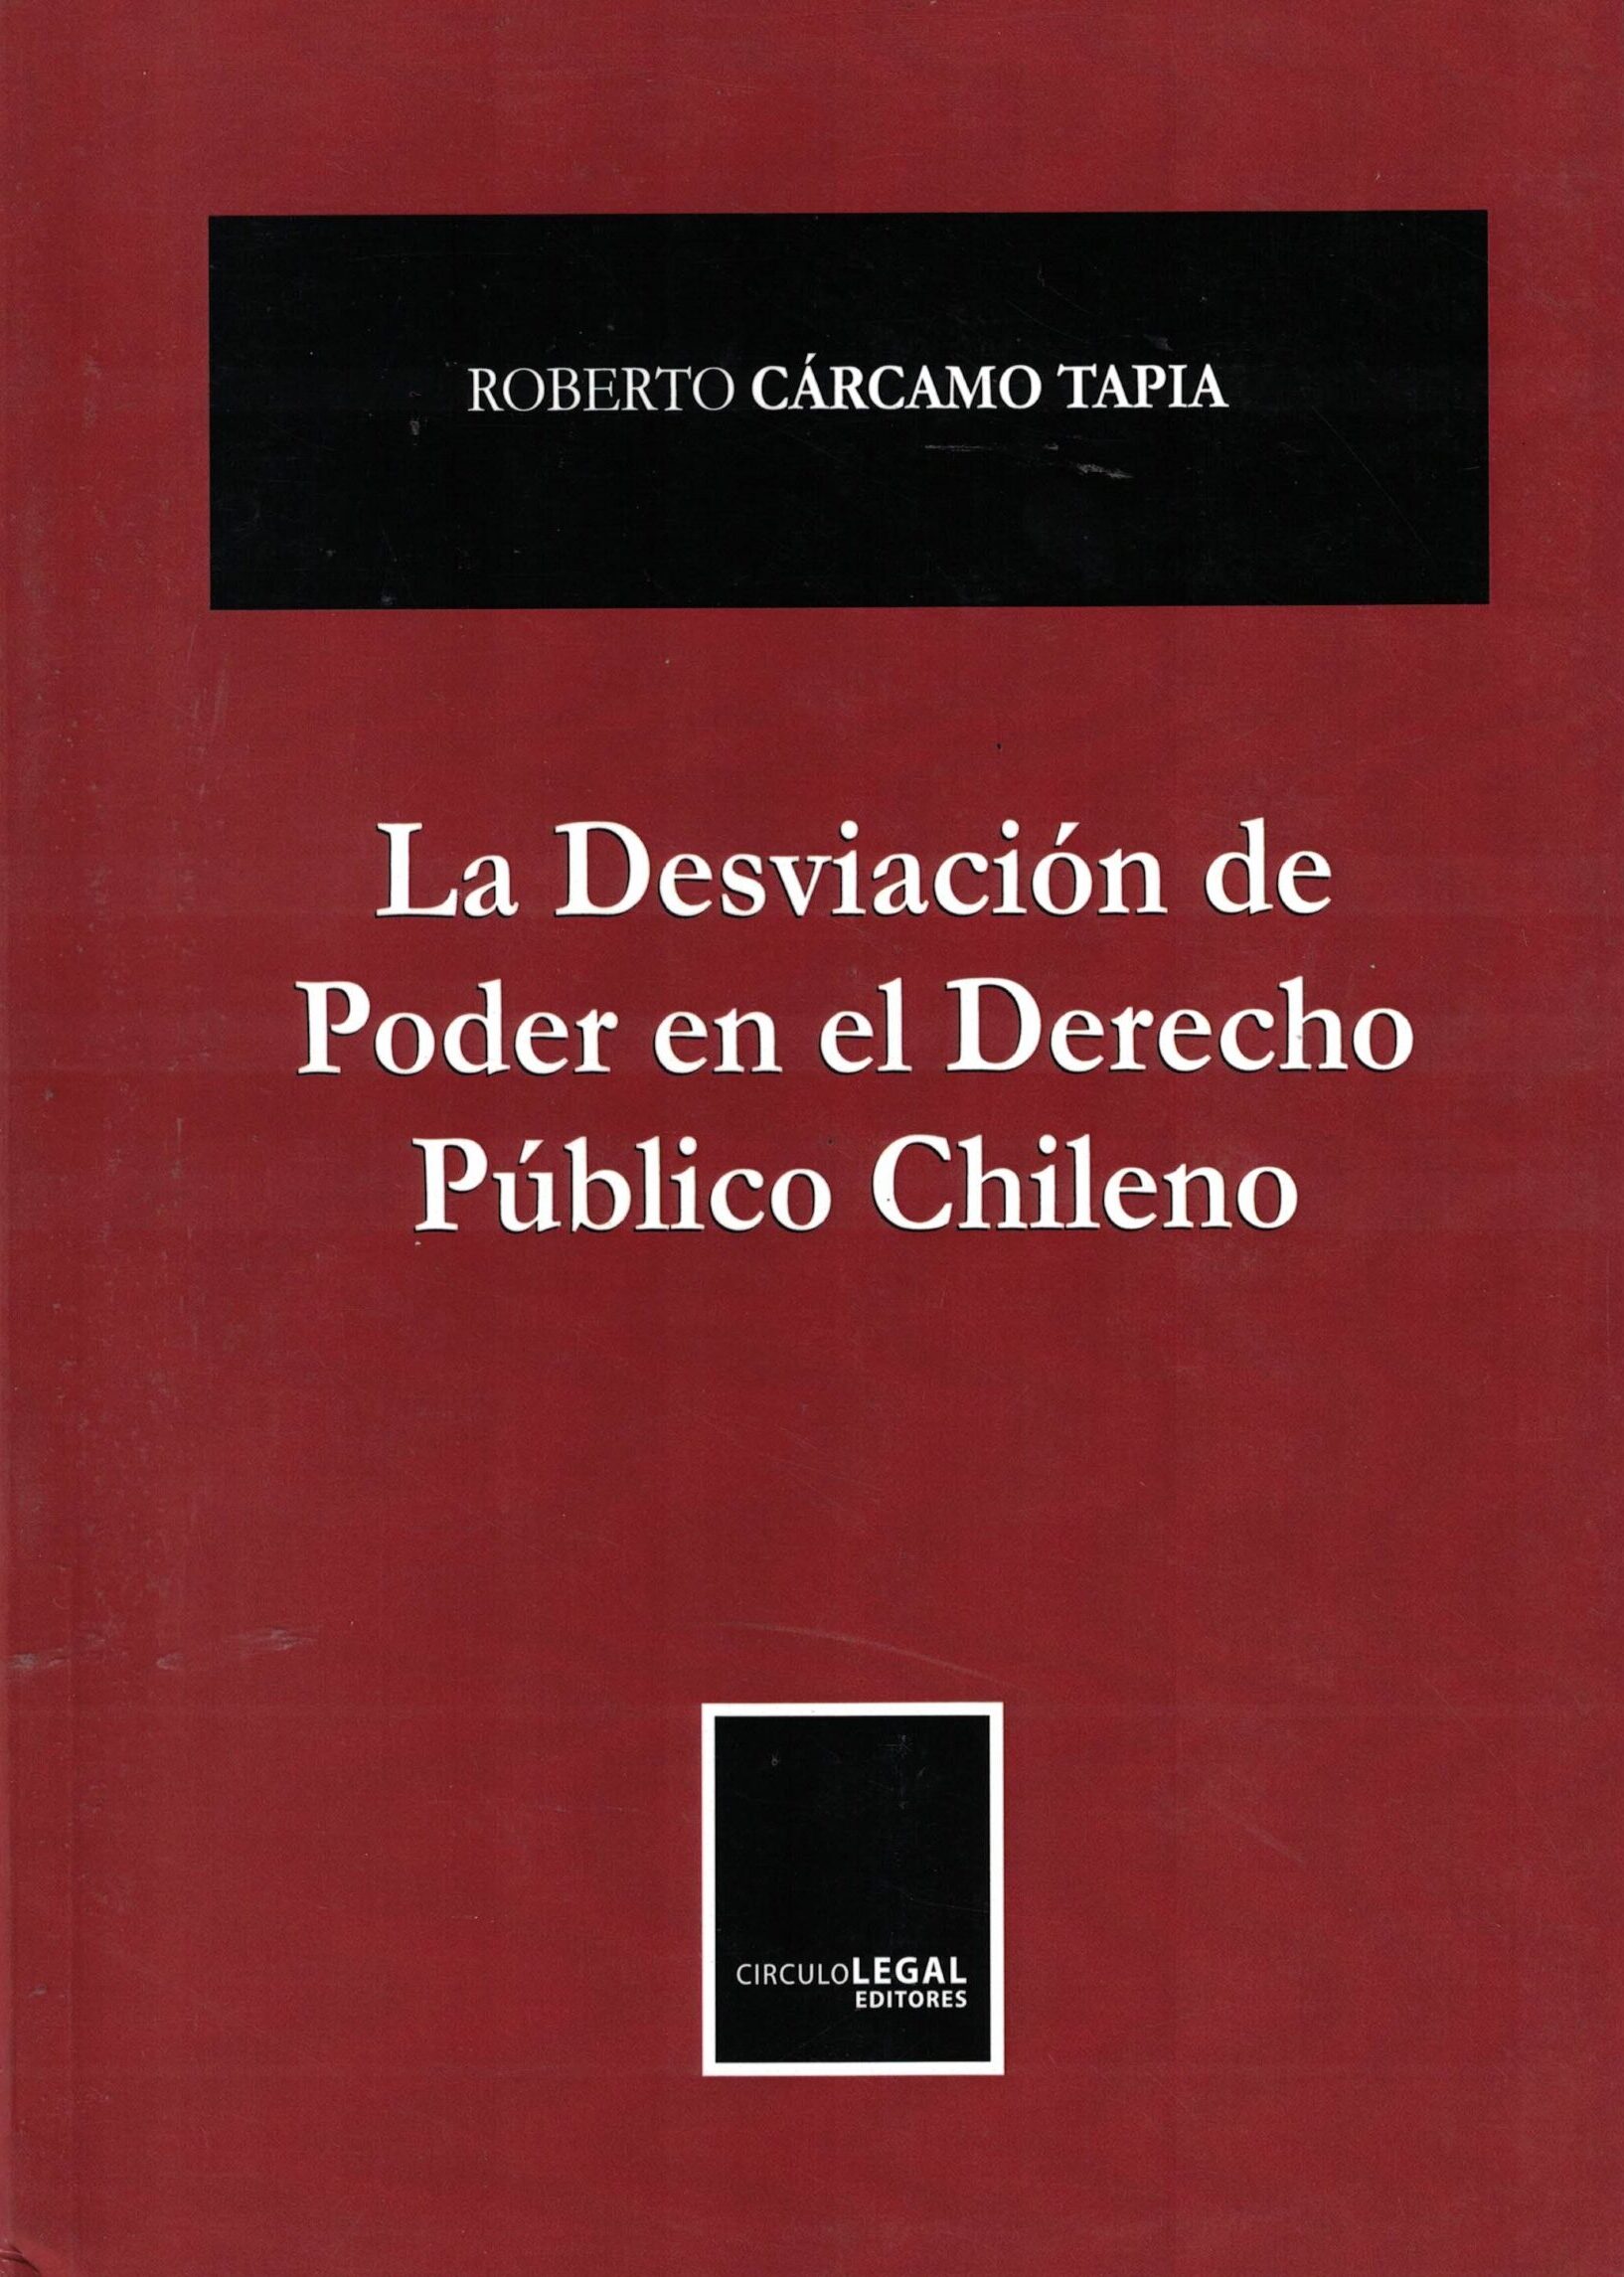 La Desviación de Poder en el Derecho Público Chileno